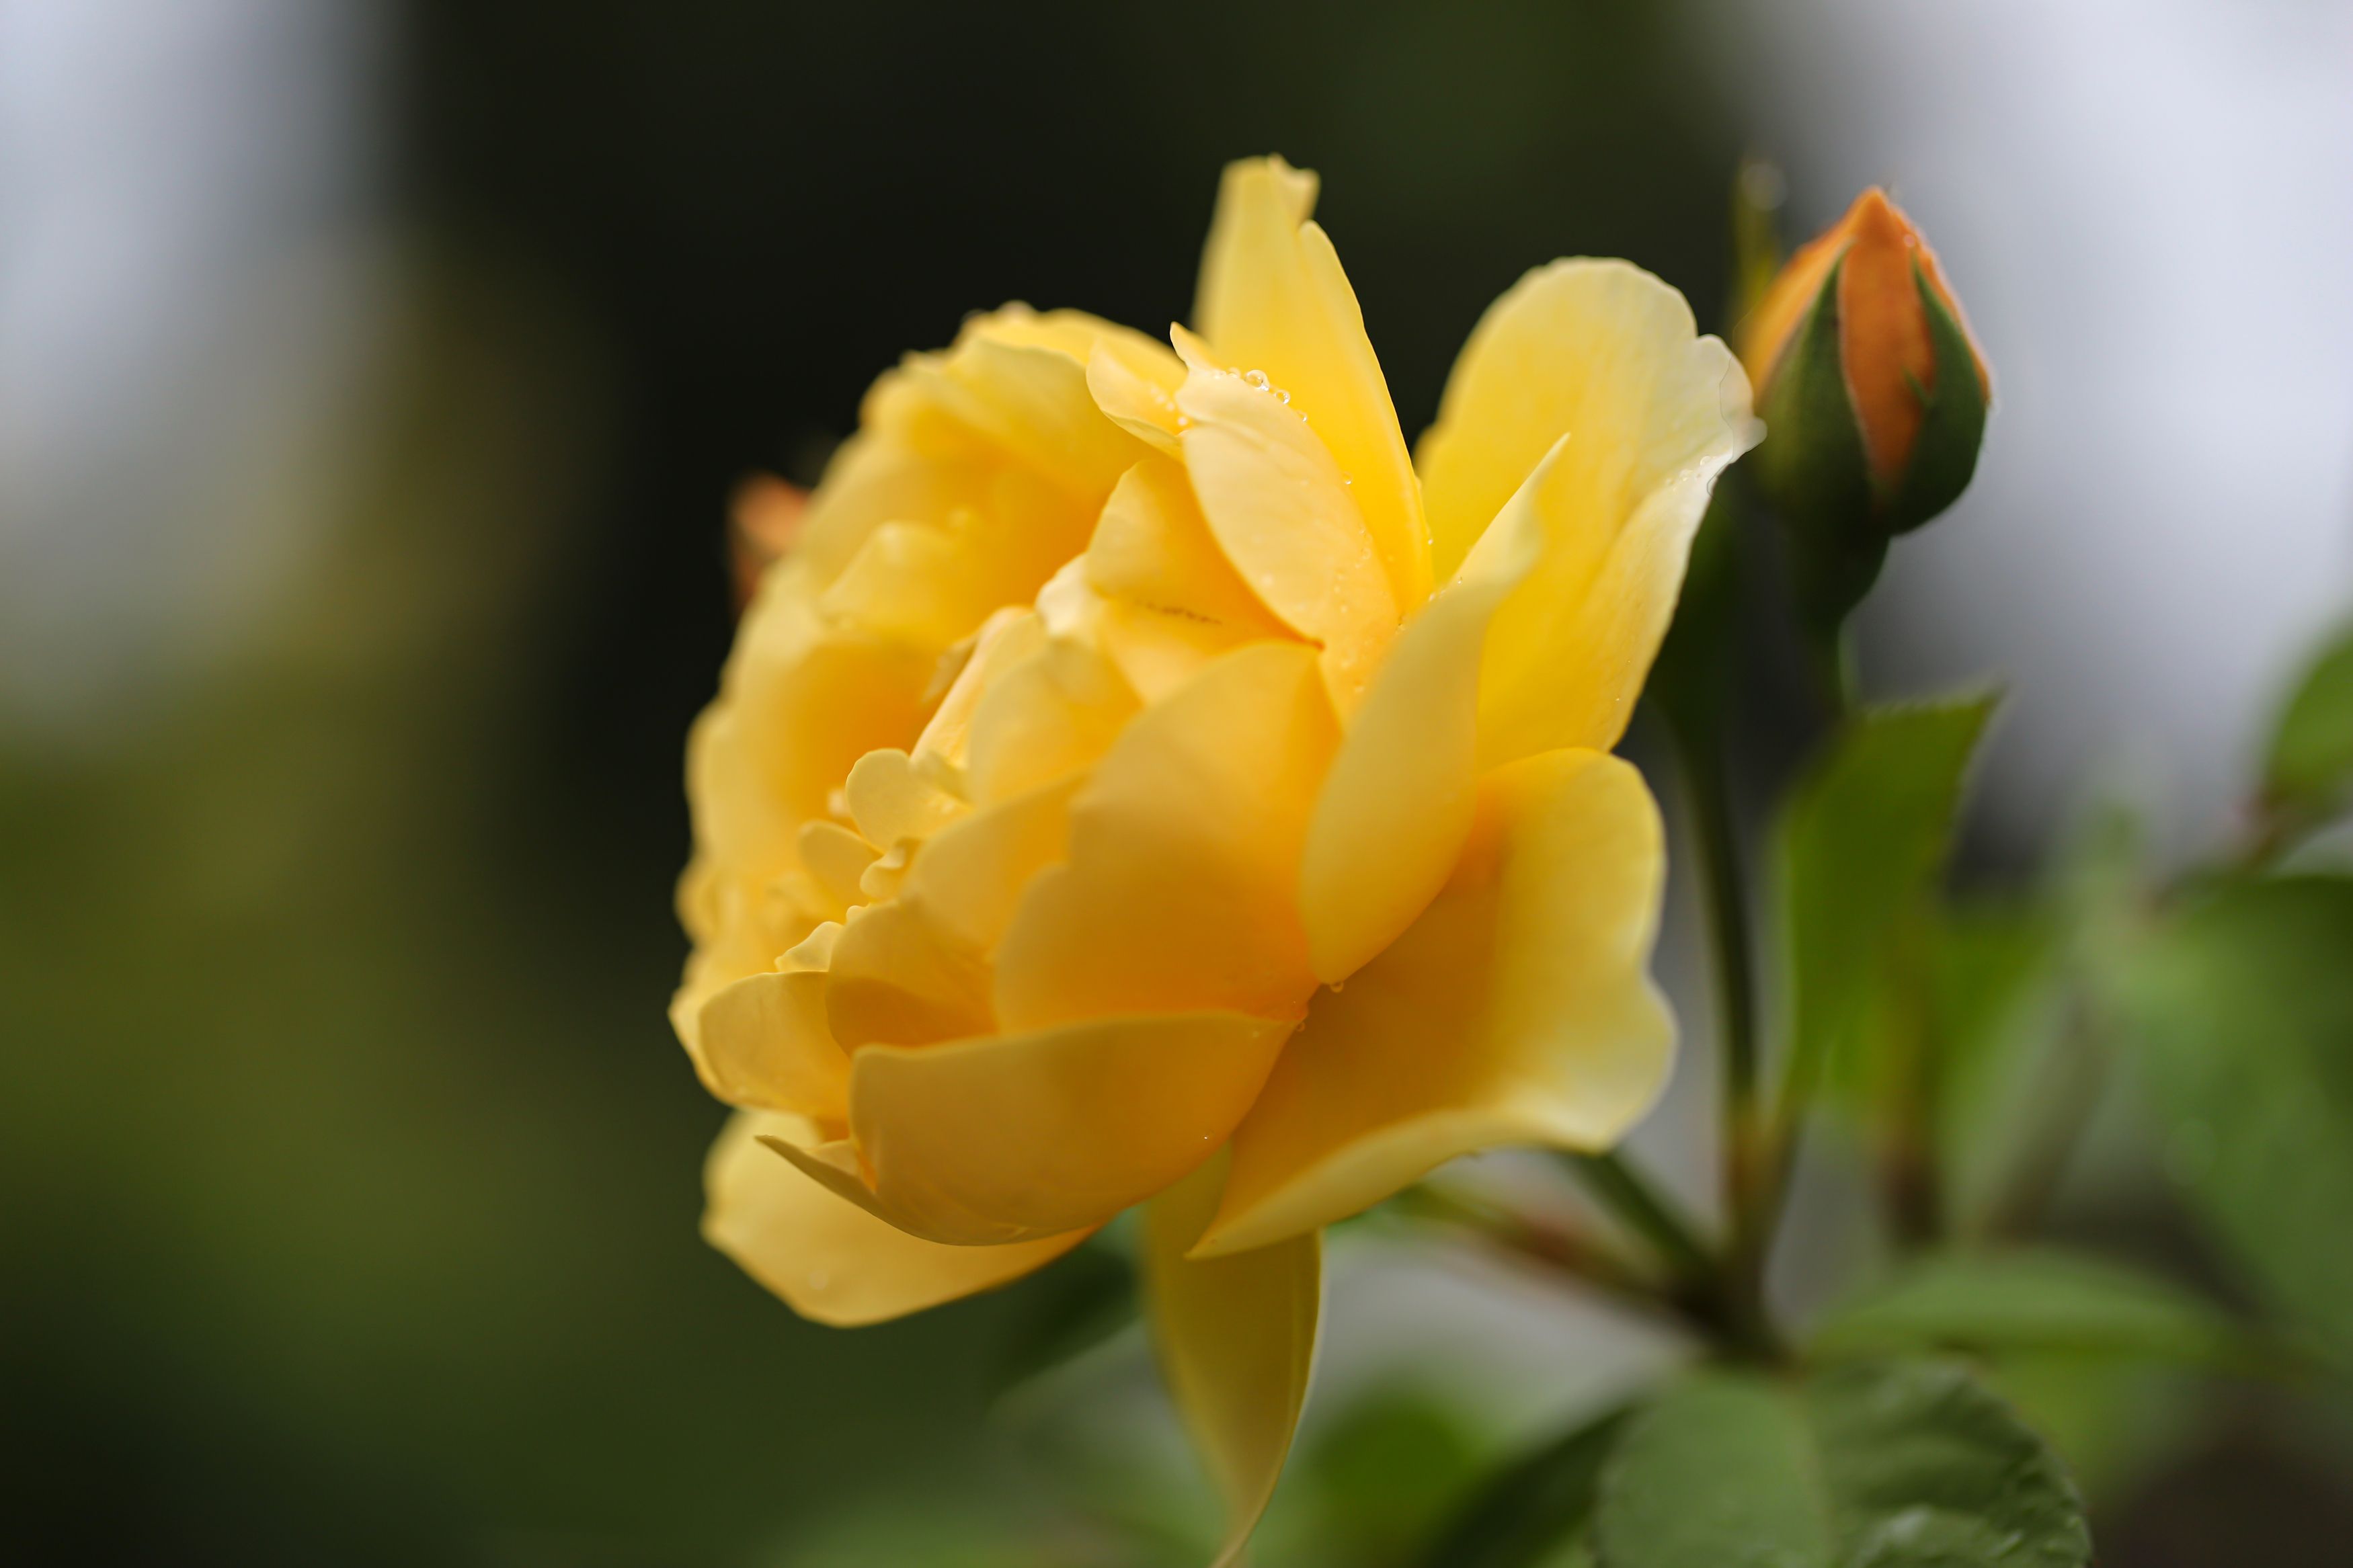 yellow rose, flowers, garden, macro, close-up, nature, blur background, DZINTRA REGINA JANSONE